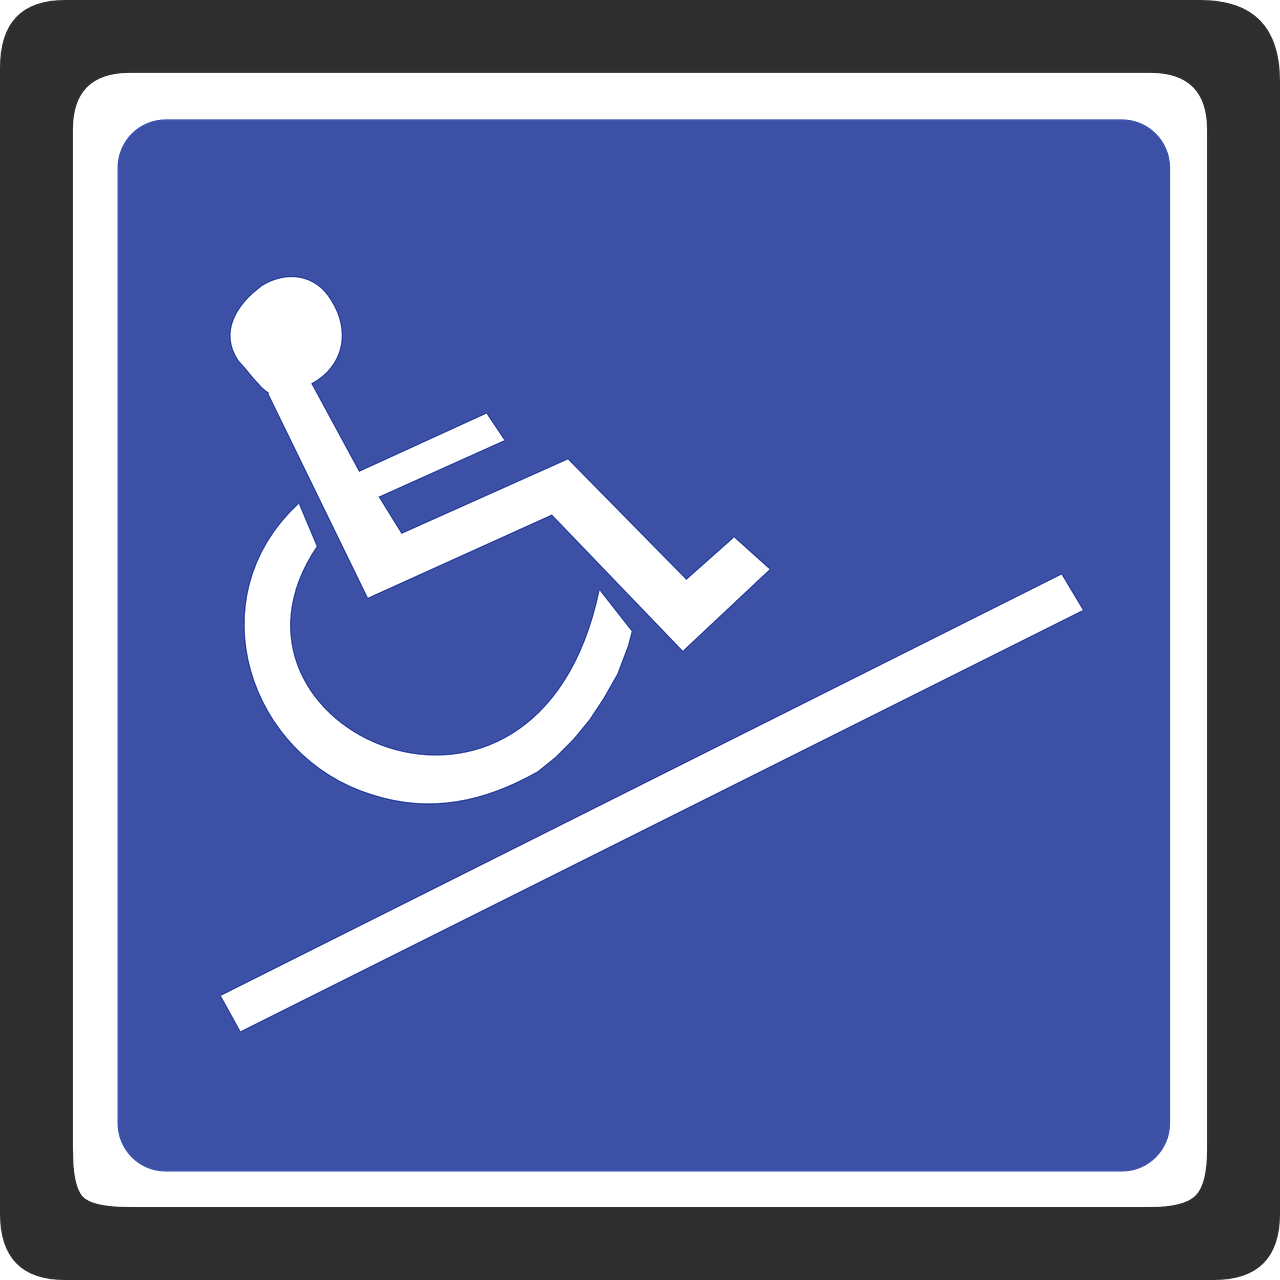 Eduard Verkadelaan Locatie instellingen voor gehandicaptenzorg verstandelijk gehandicapten